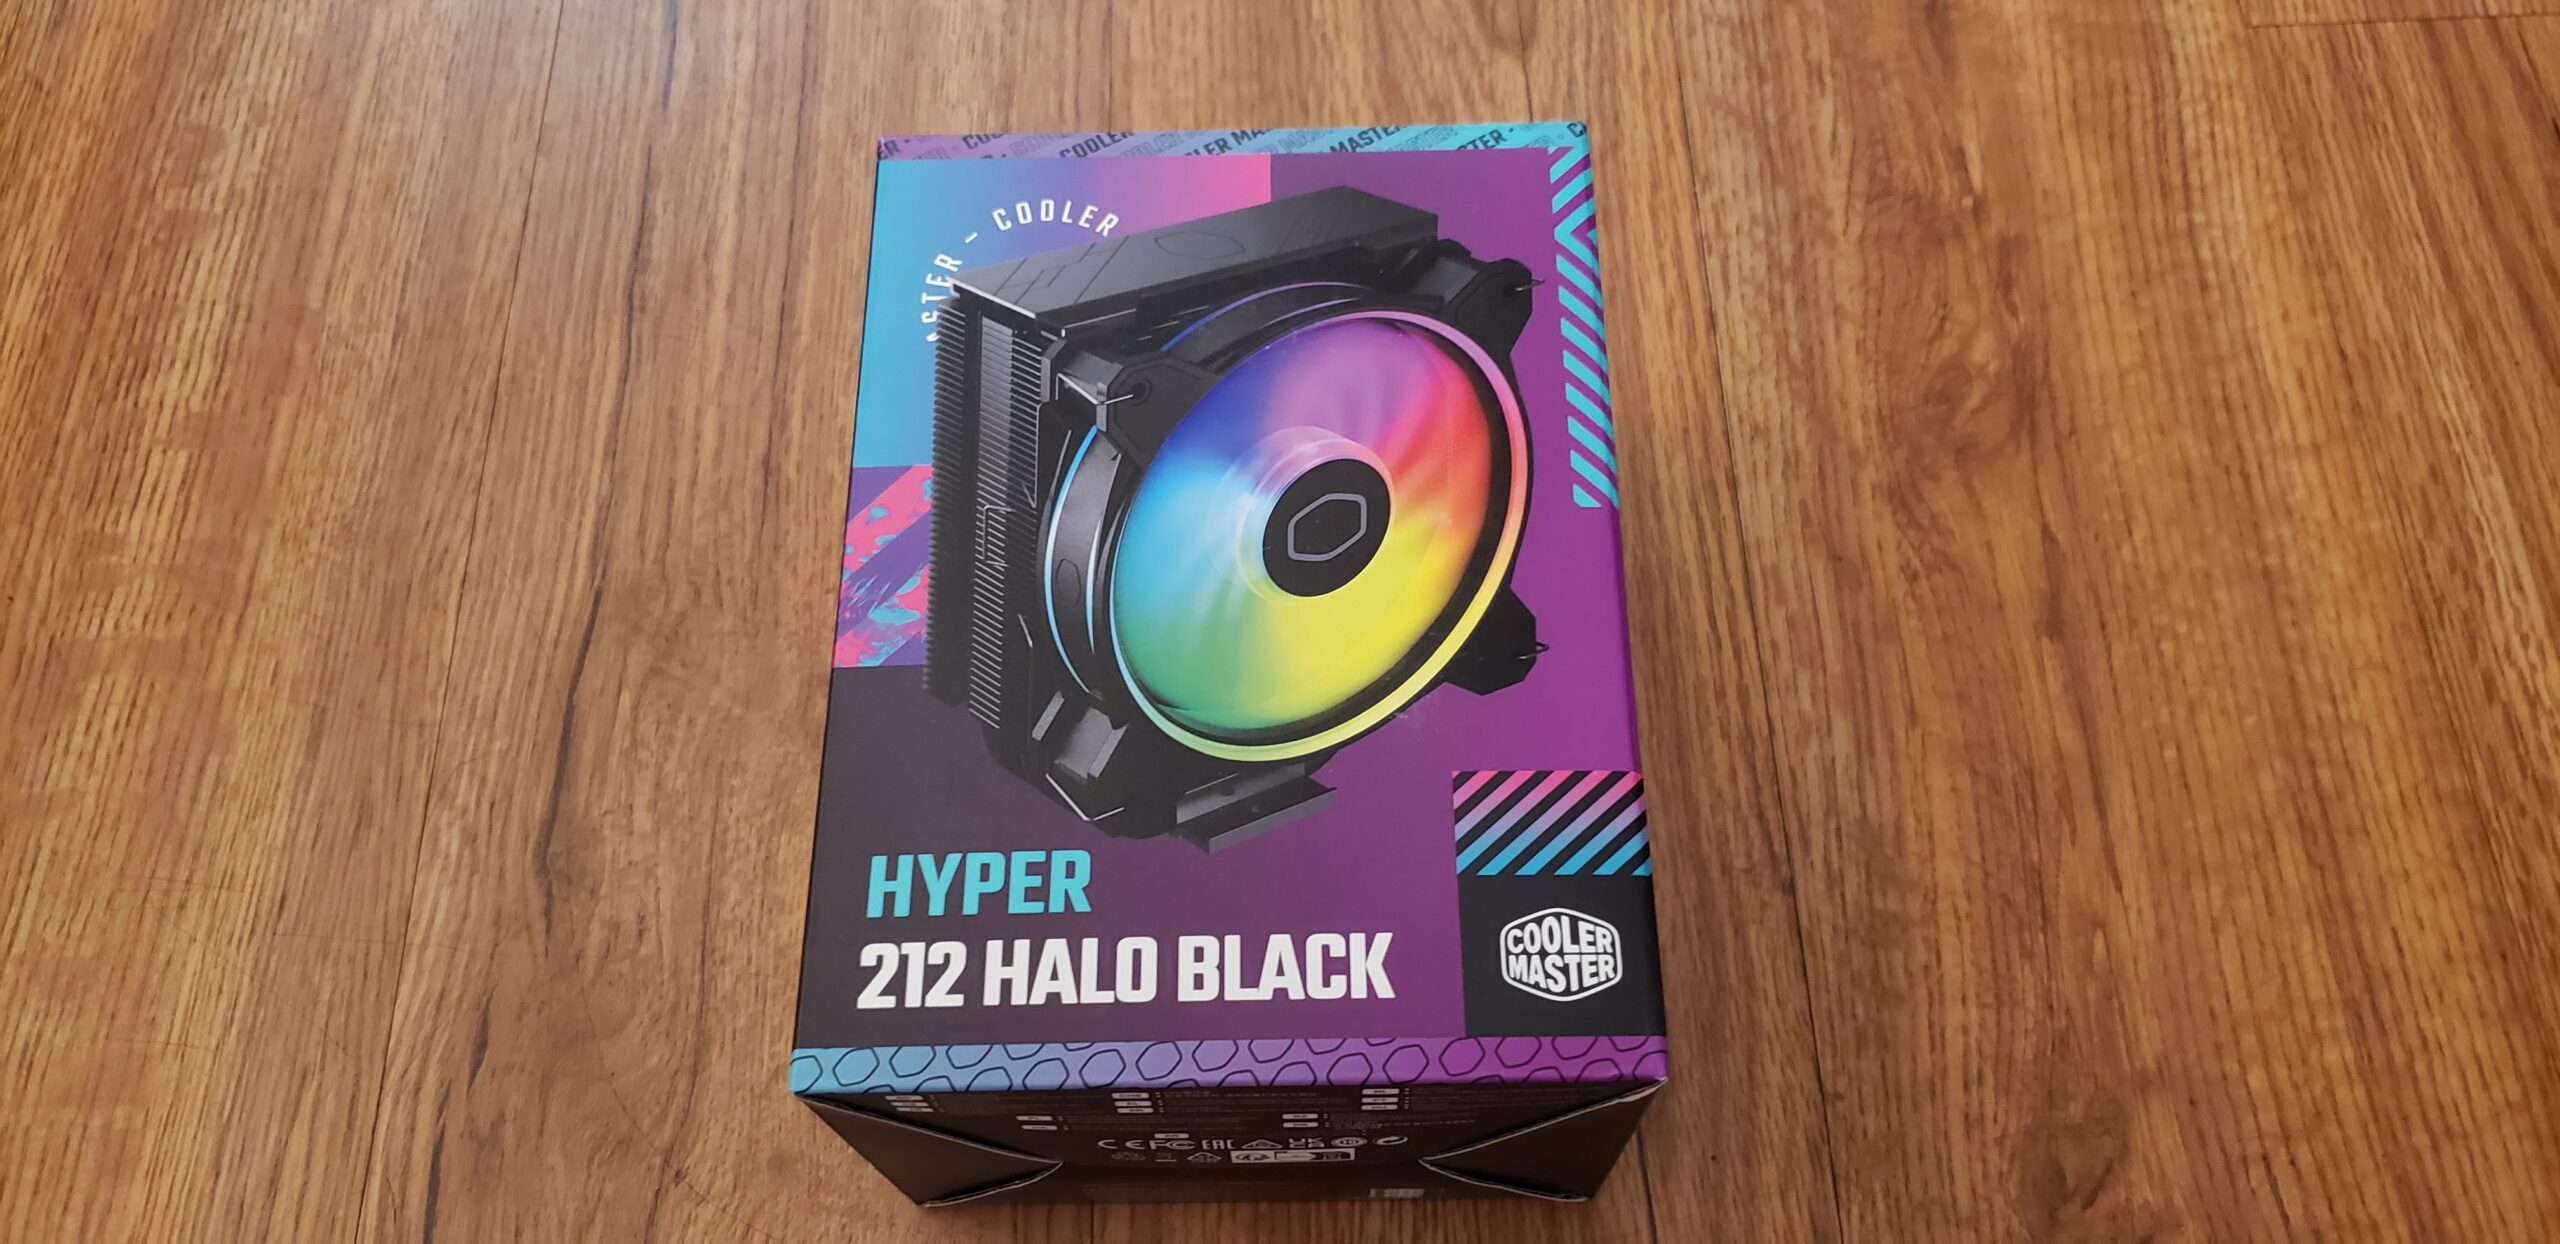 Cooler Master Hyper 212 Halo Black Review